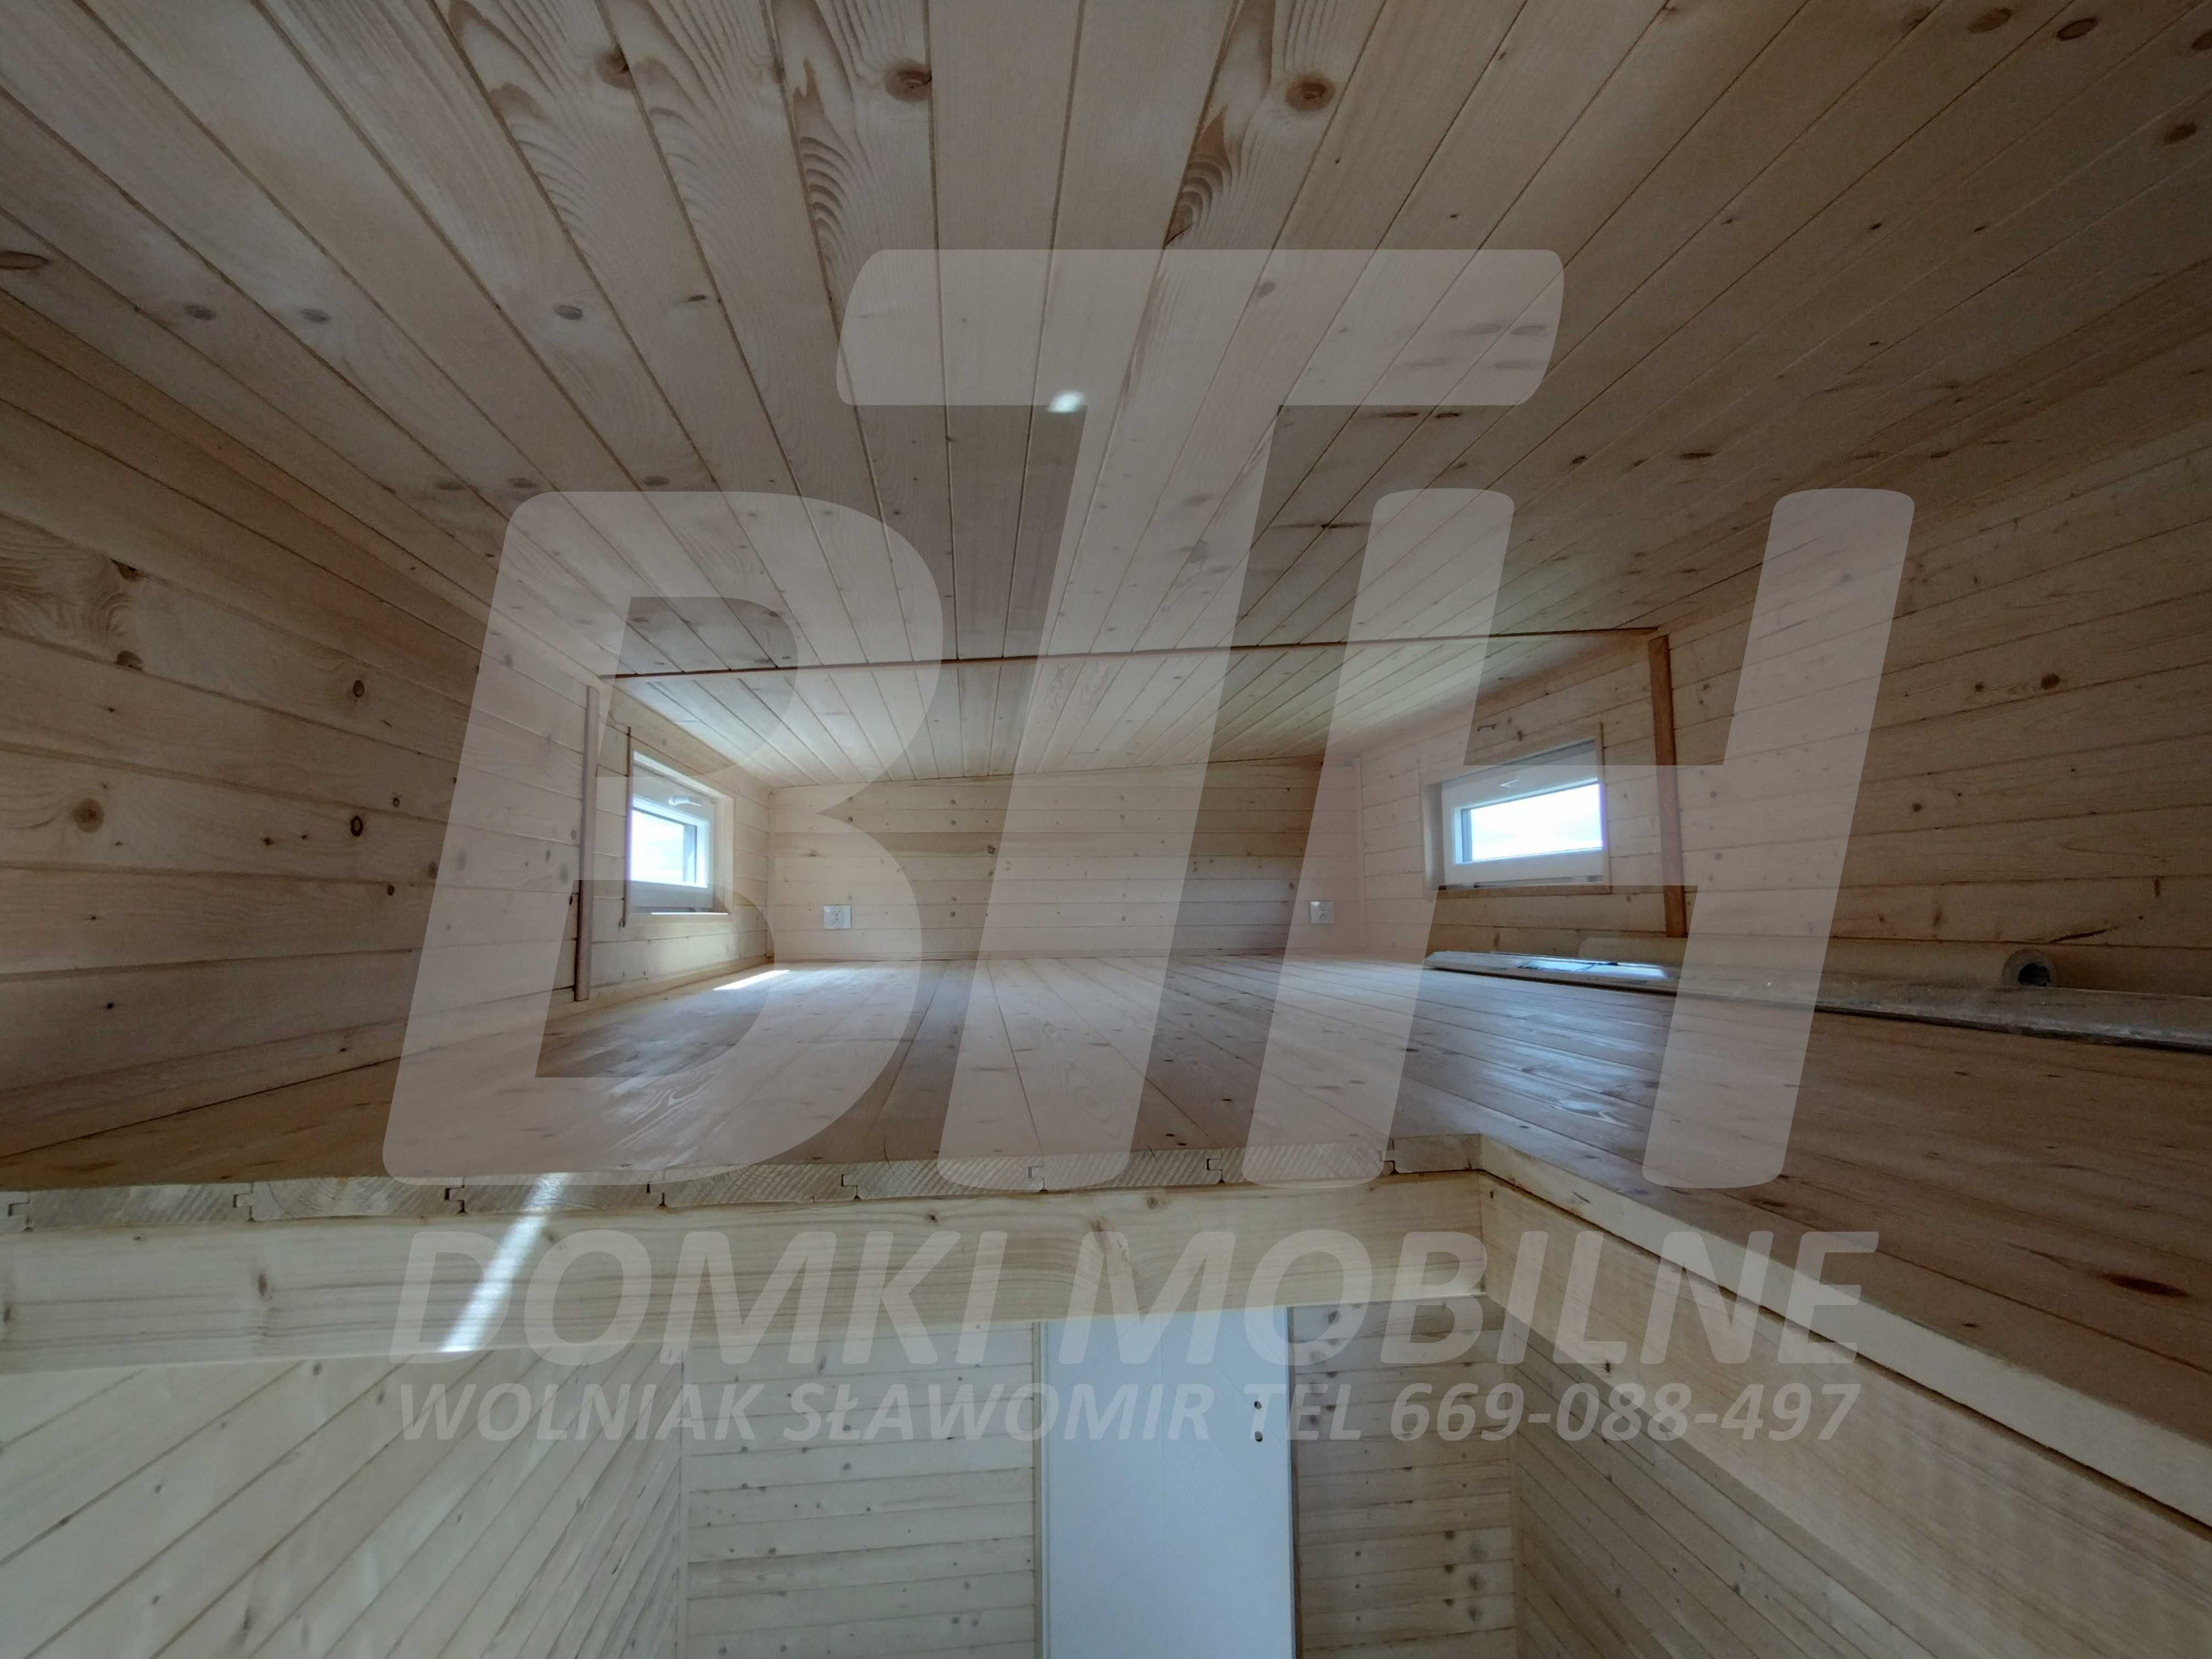 Domki Mobilne 16,2 m2 +14m2 antresola Indywidualne Zamówienie BT-HOUSE